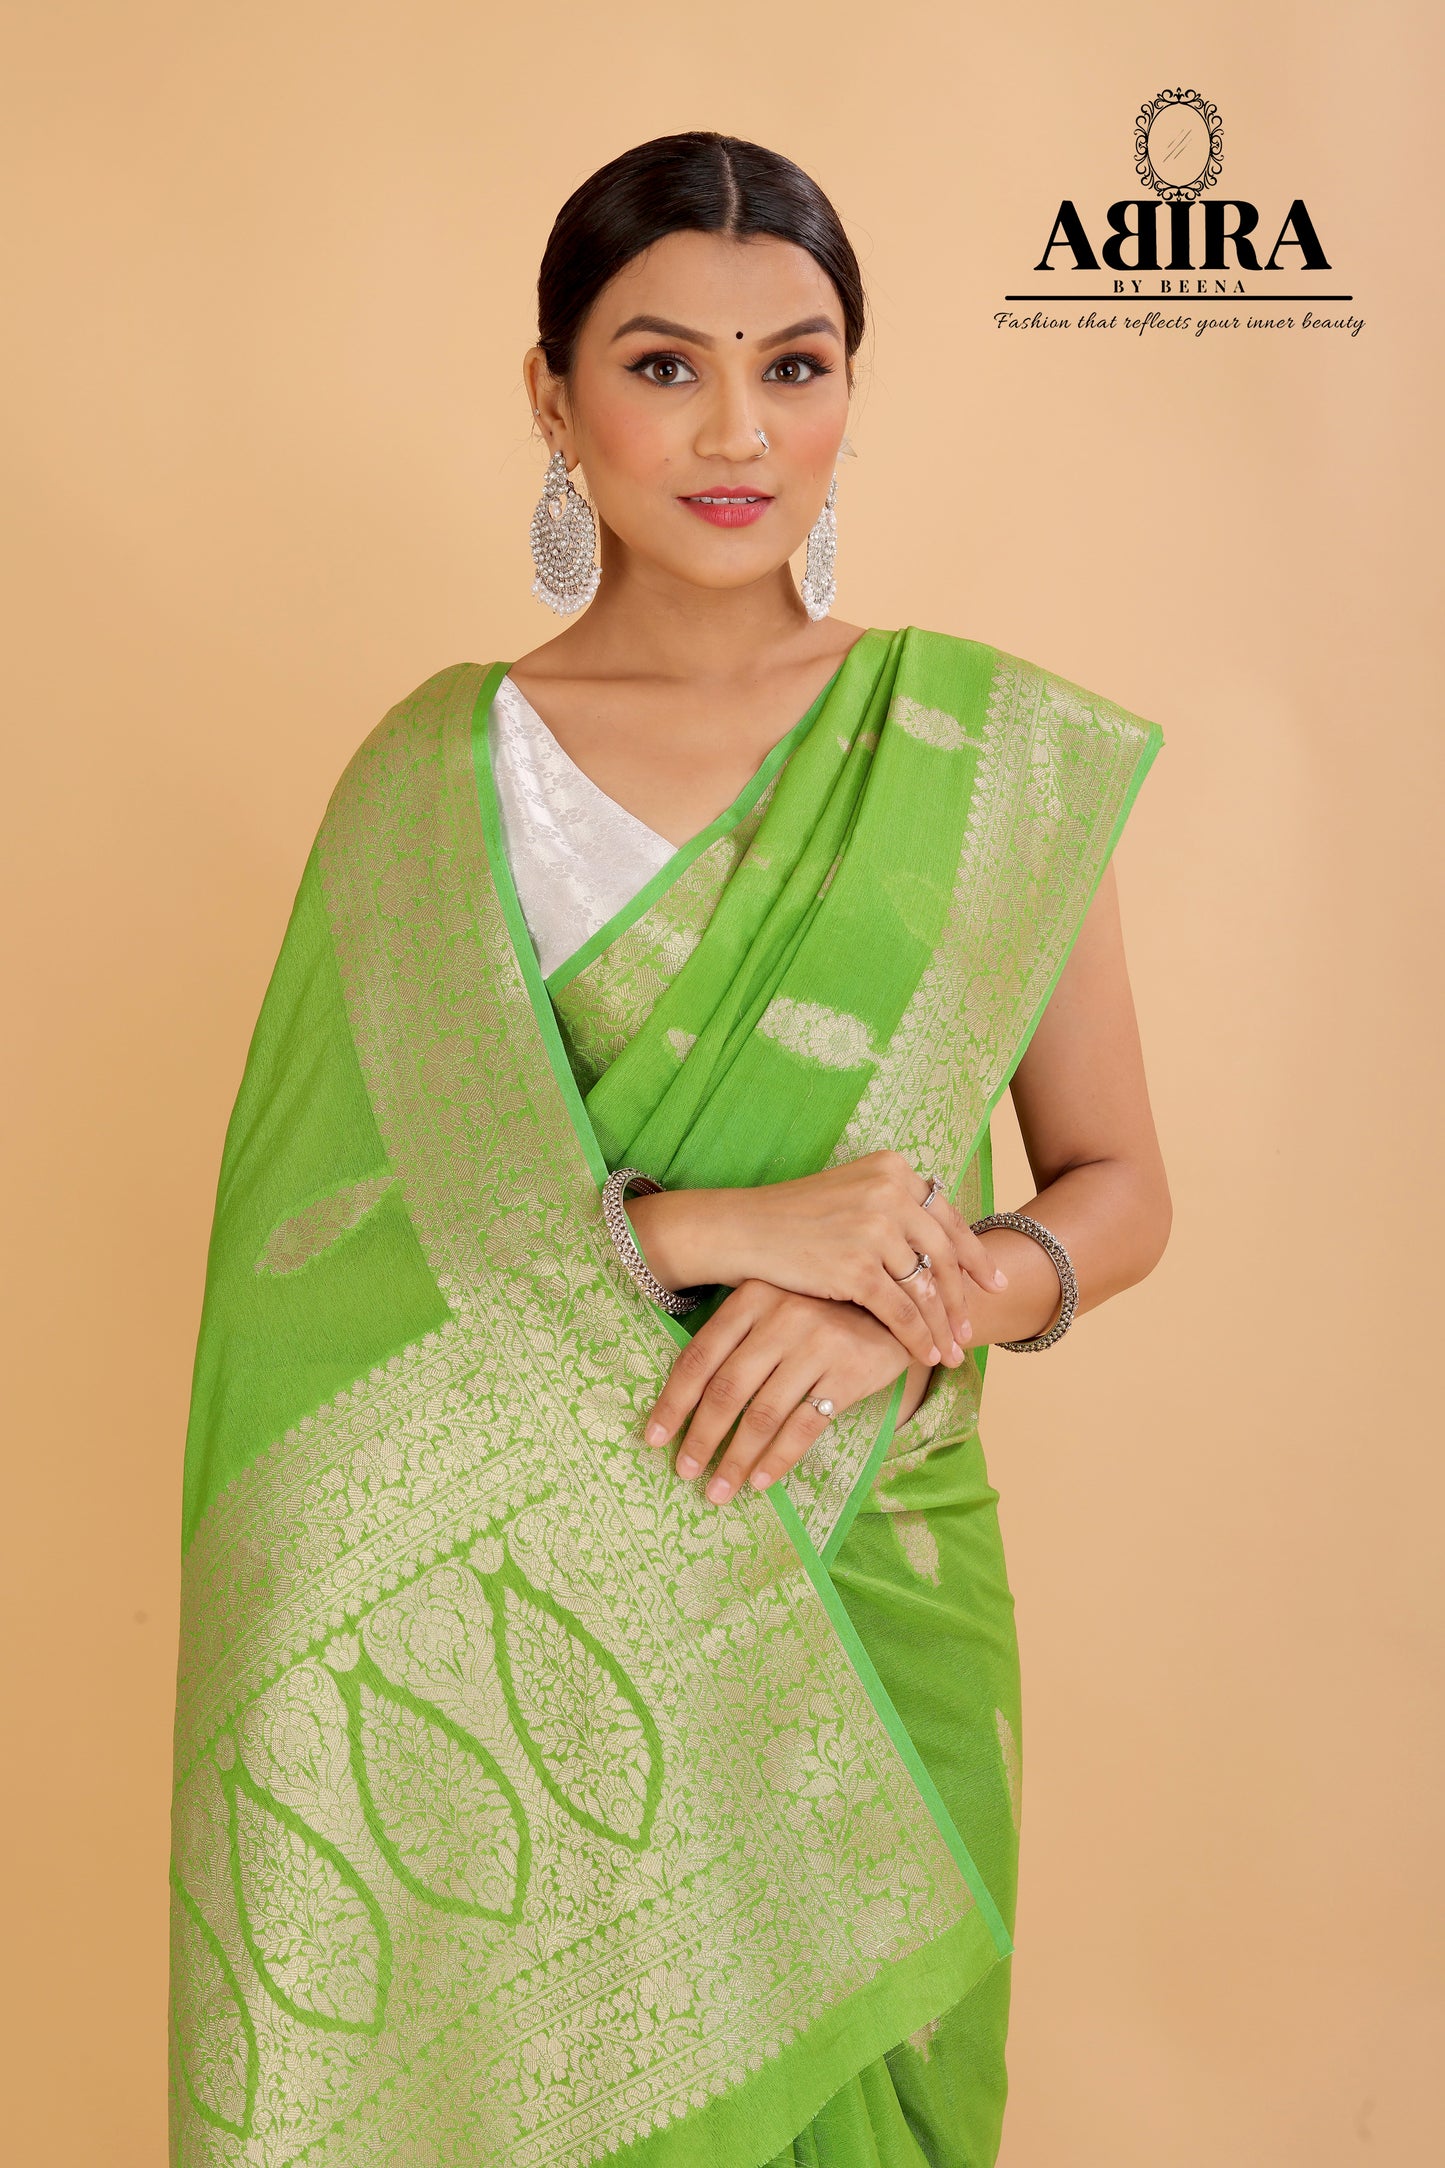 Parrot Green Banaras warm silk - AbirabyBeena